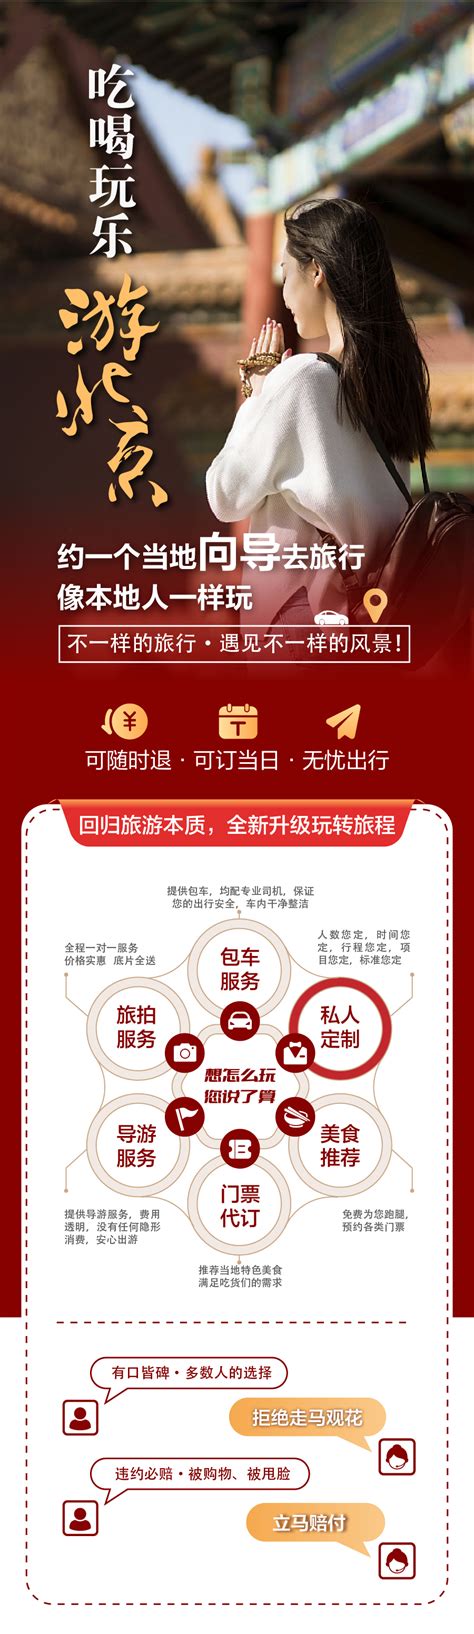 首届北京文化论坛将于7月25日至26日举办_凤凰网视频_凤凰网